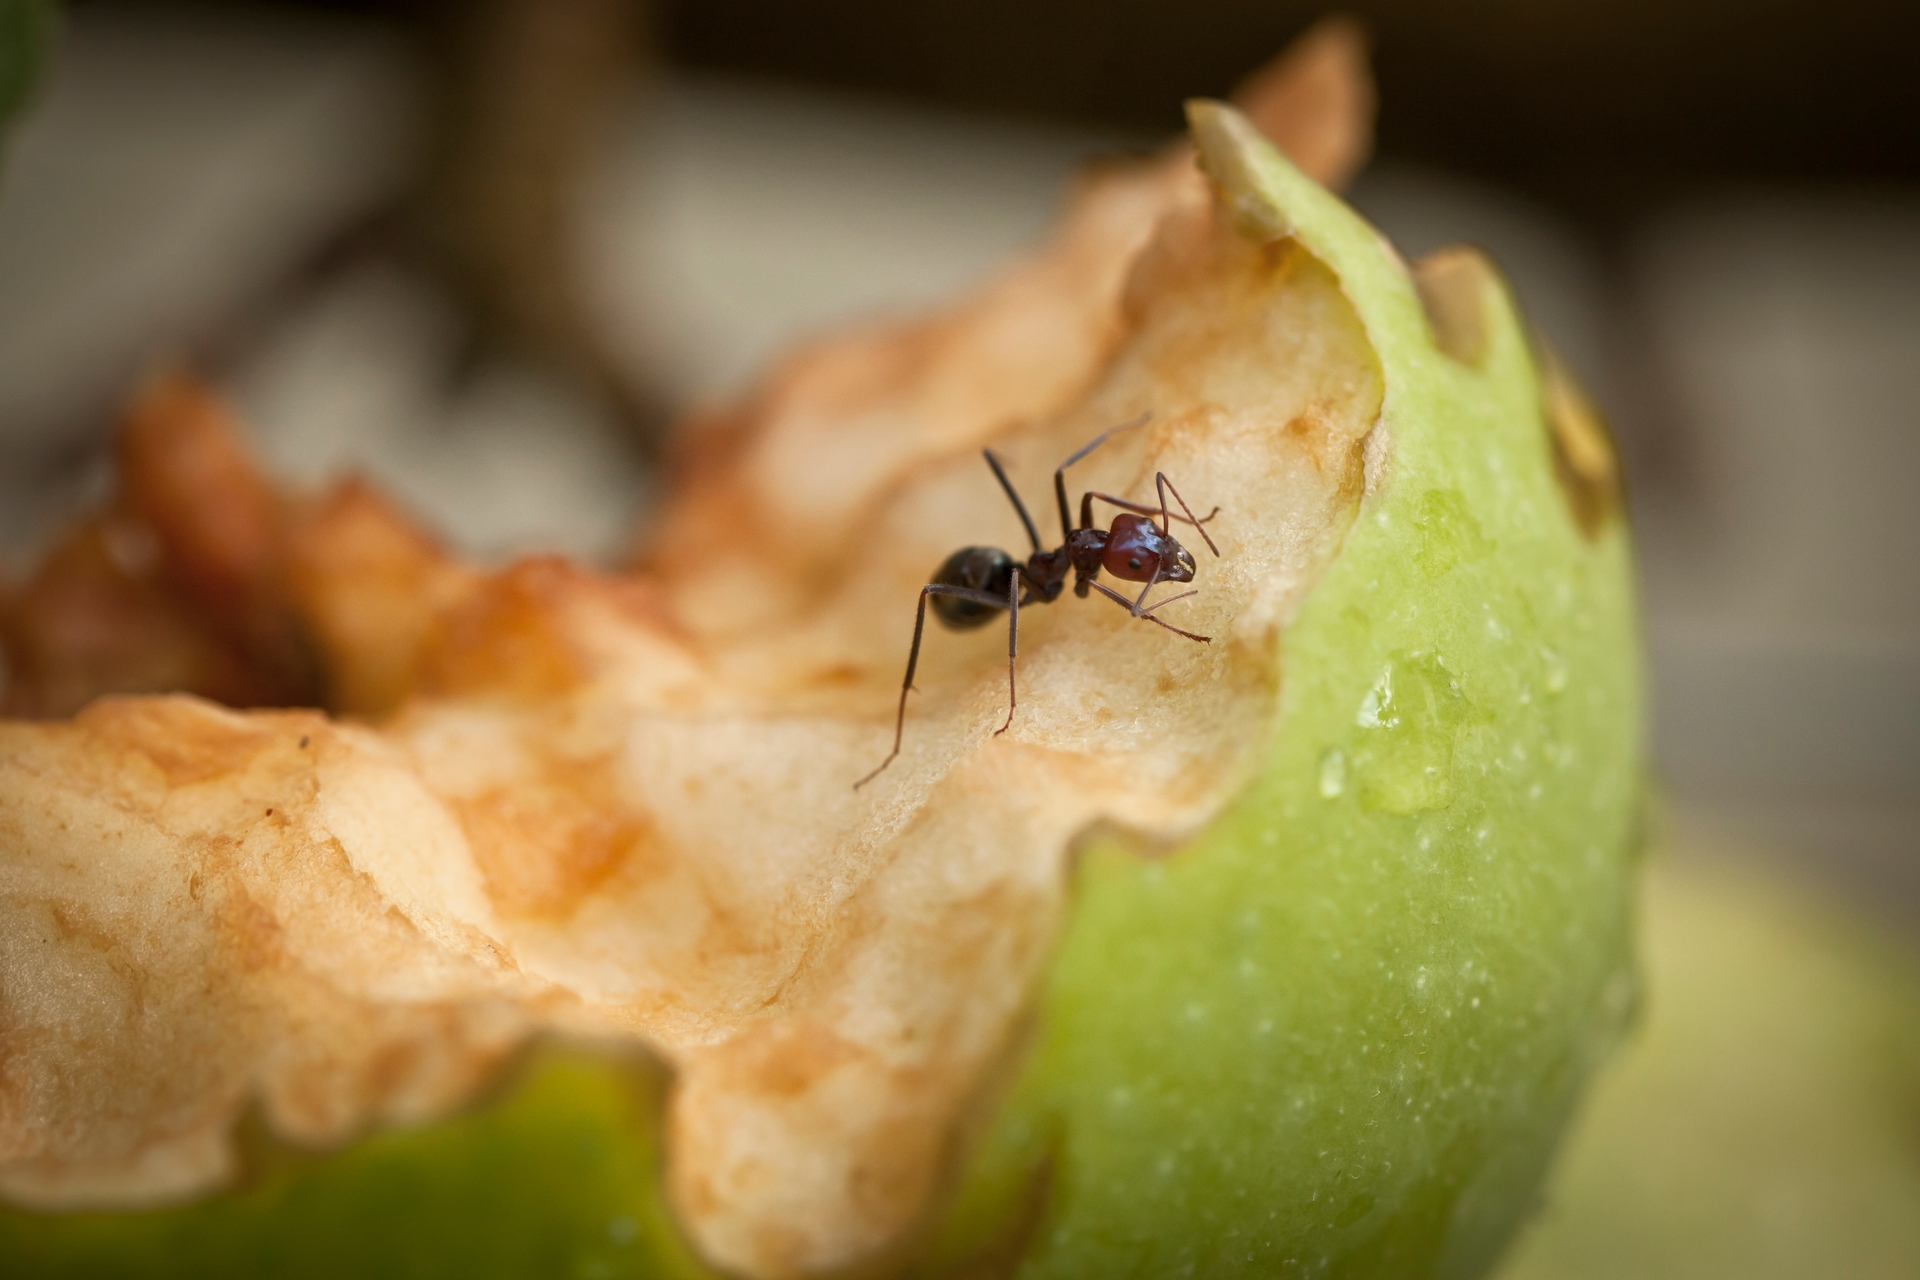 Ant on an apple